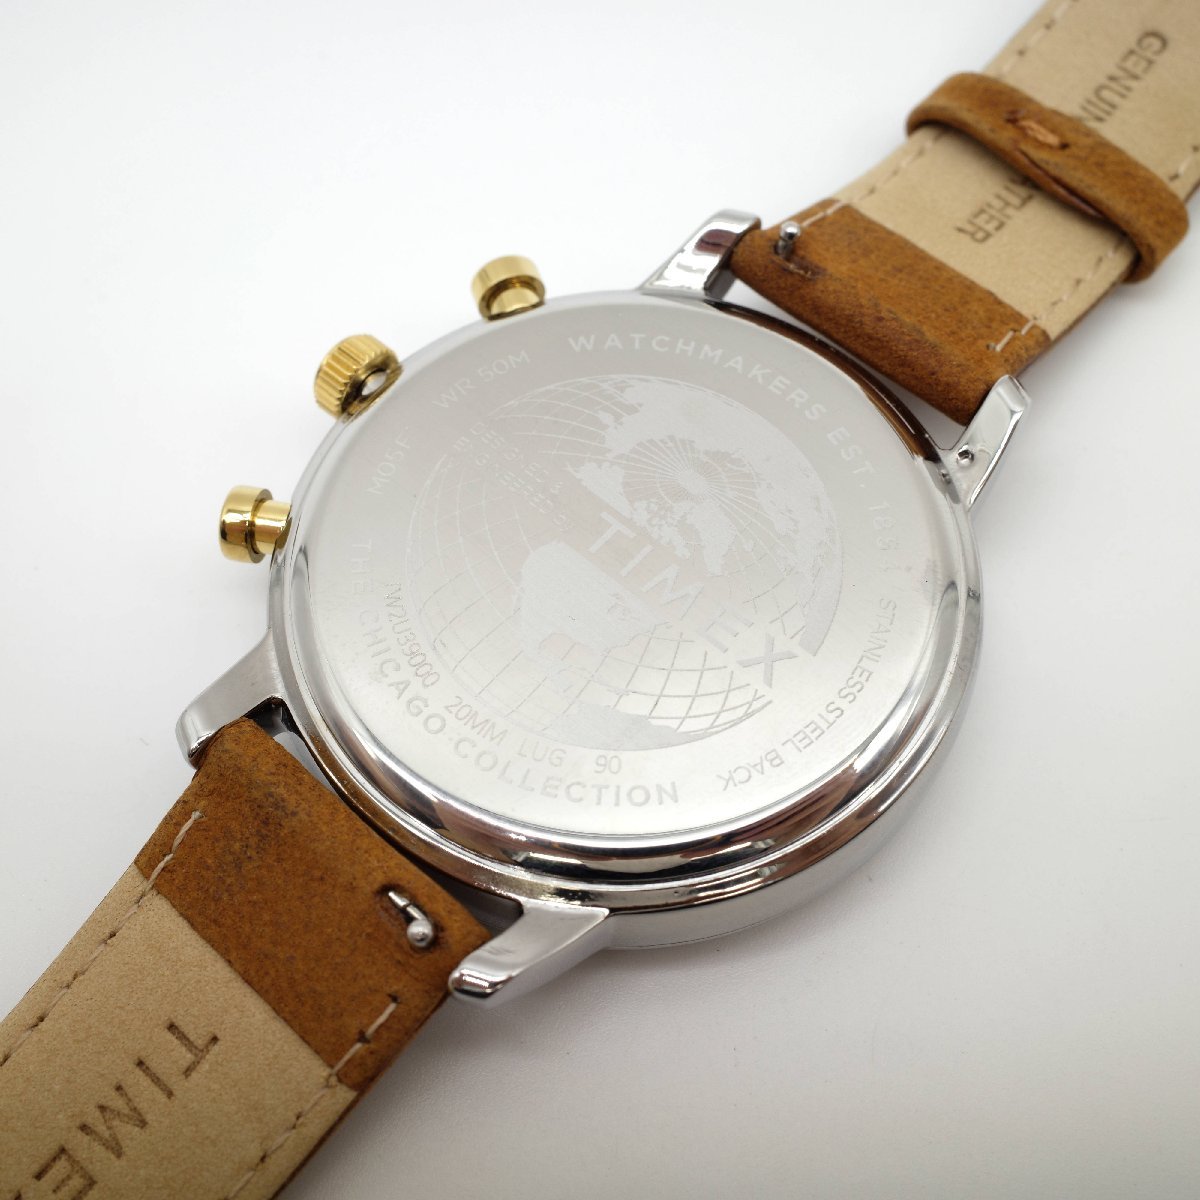 2373〇/【電池切れ】TIMEX 腕時計 City Collection TW2U39000 クロノグラフ 真鍮ケース レザーベルト 5気圧防水 メンズ ブラウン【0122】_画像5